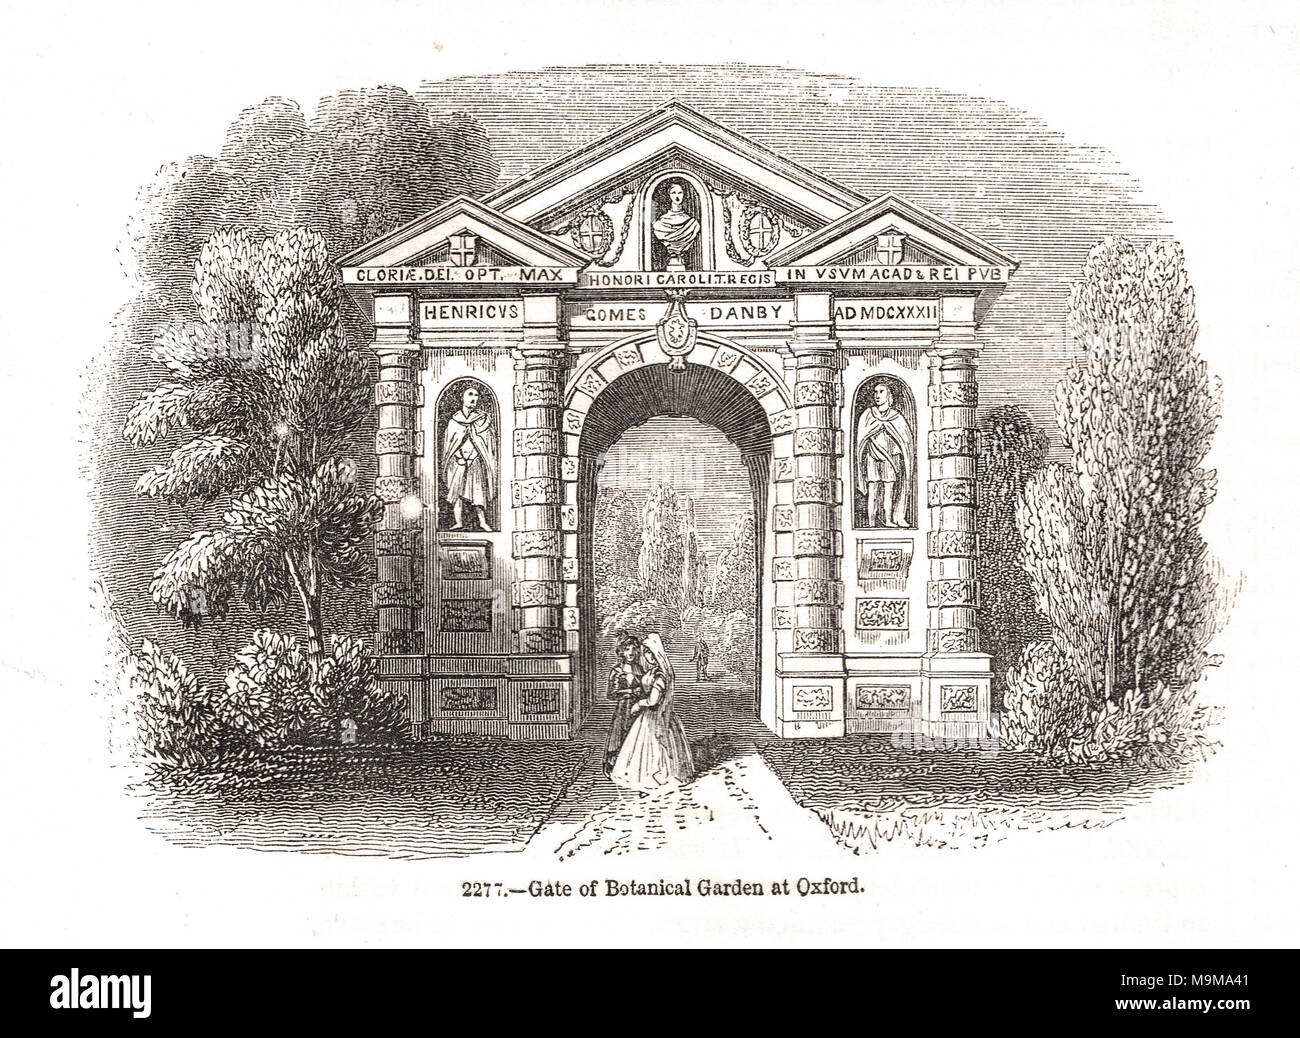 La passerelle de Danby, porte du jardin botanique de l'Université d'Oxford, Angleterre, 19e siècle scène Banque D'Images